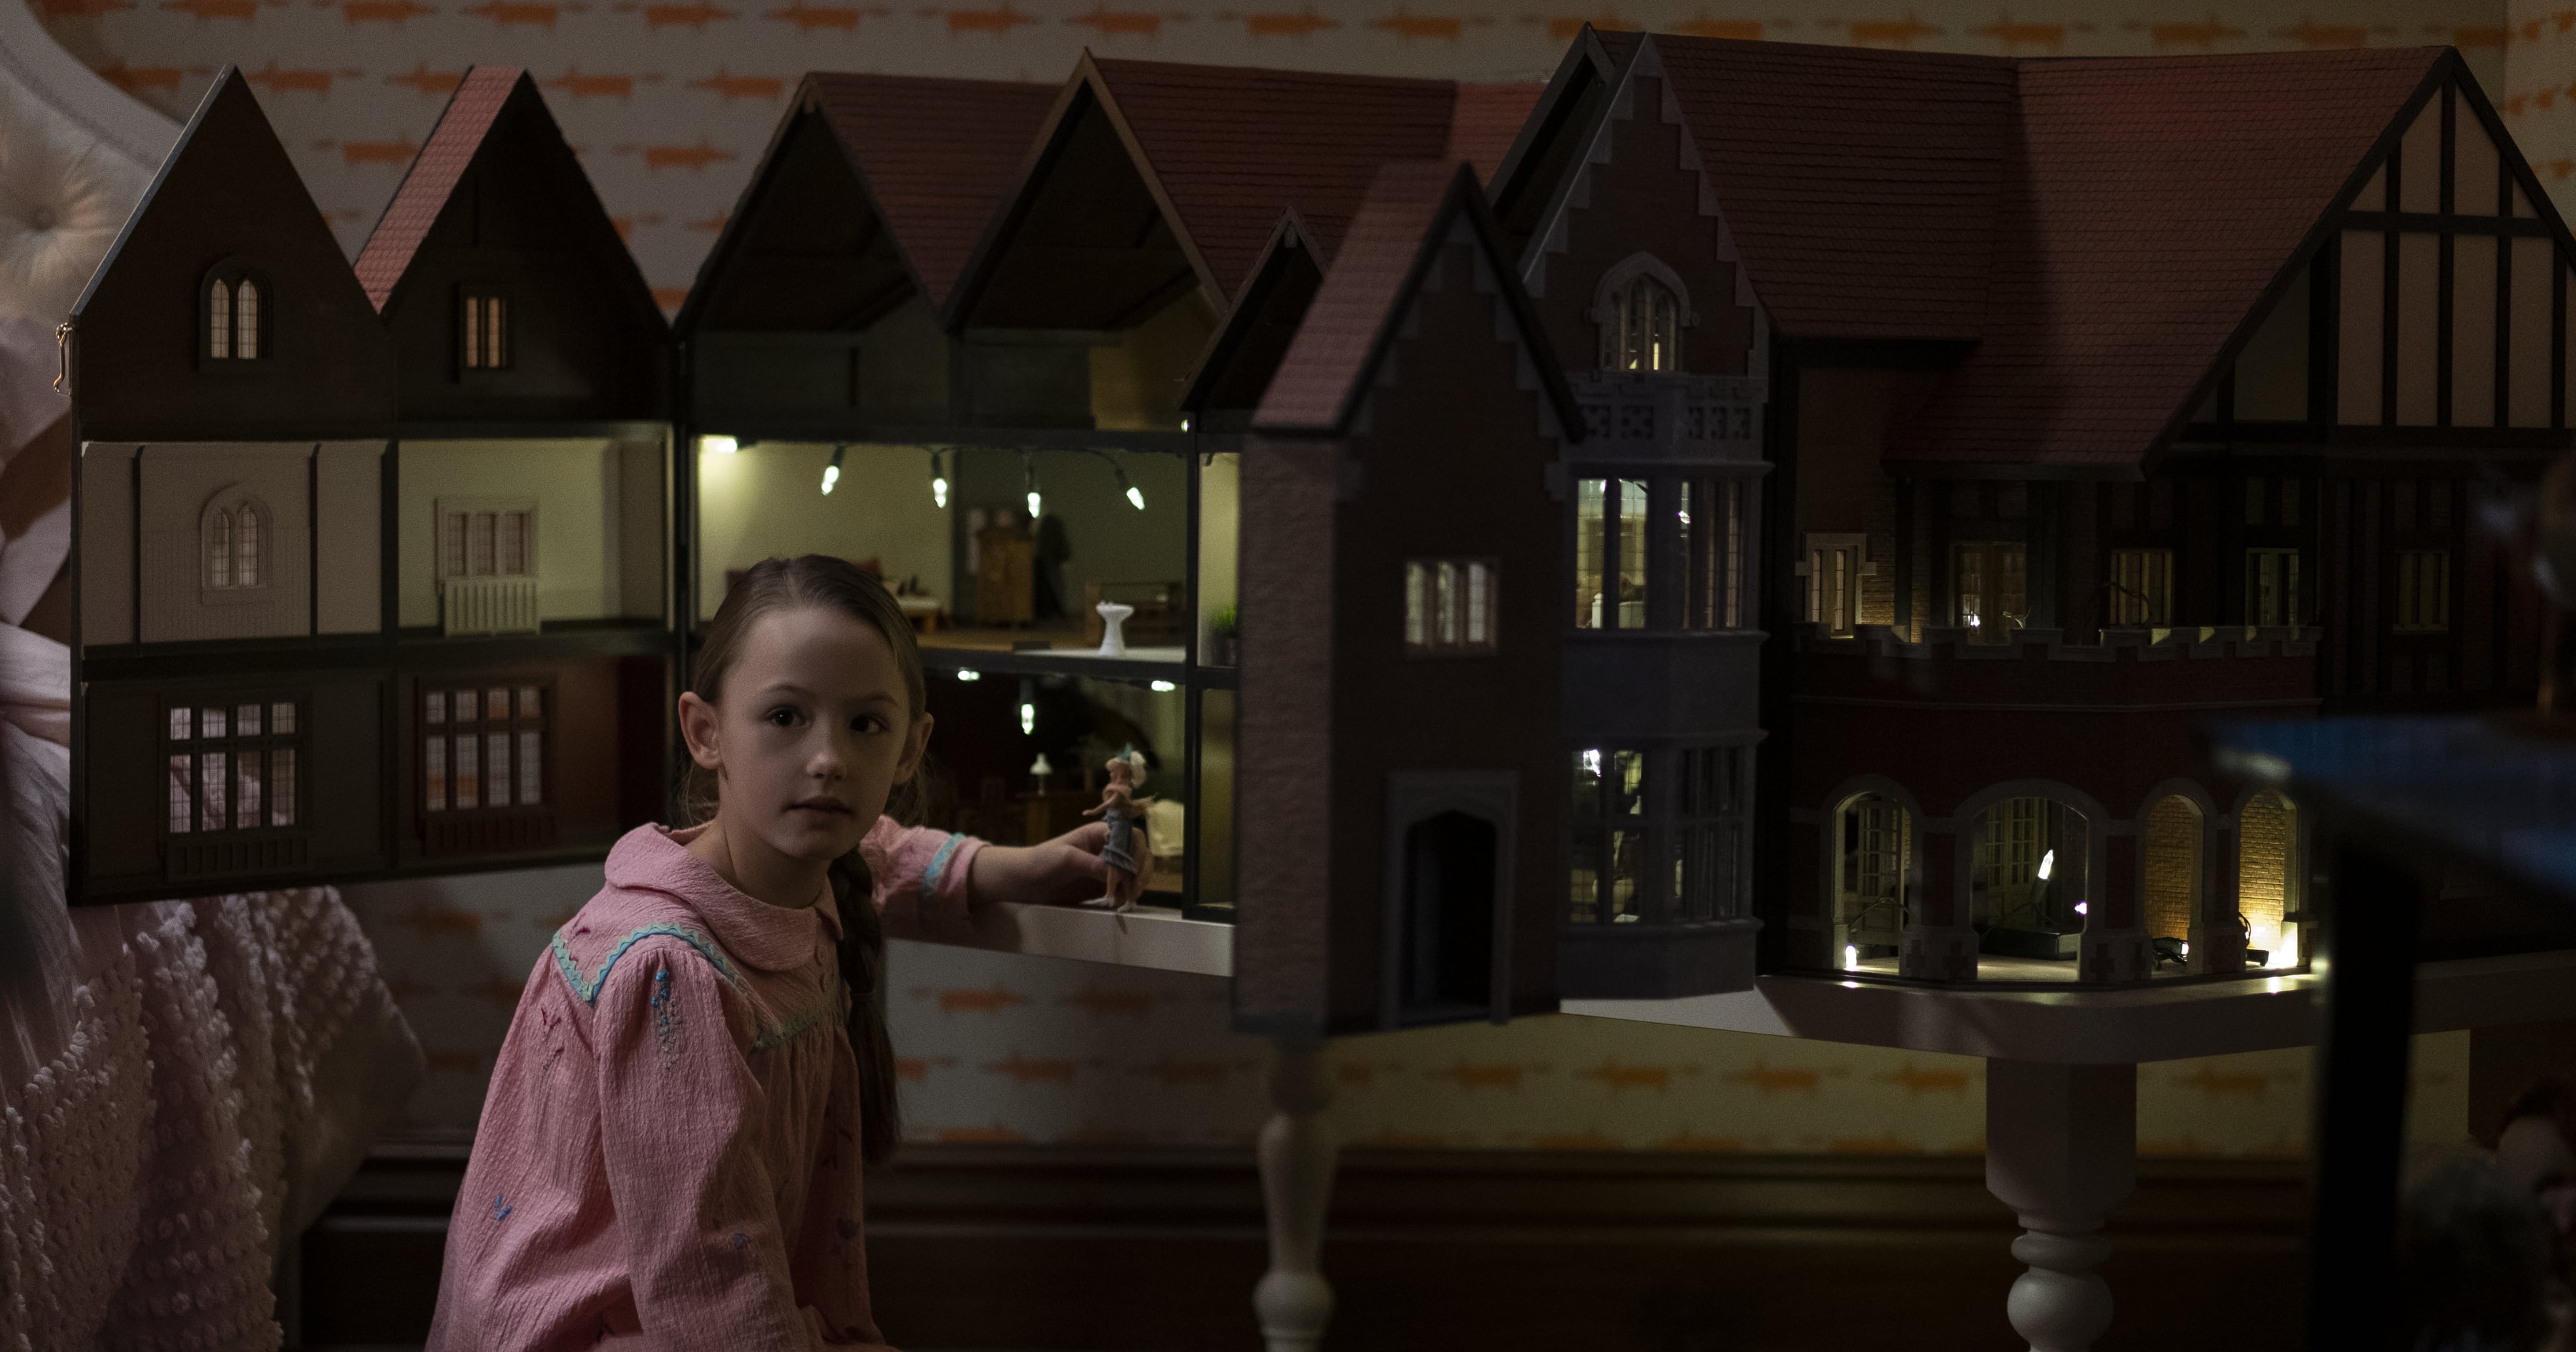 the dollhouse was so creepy